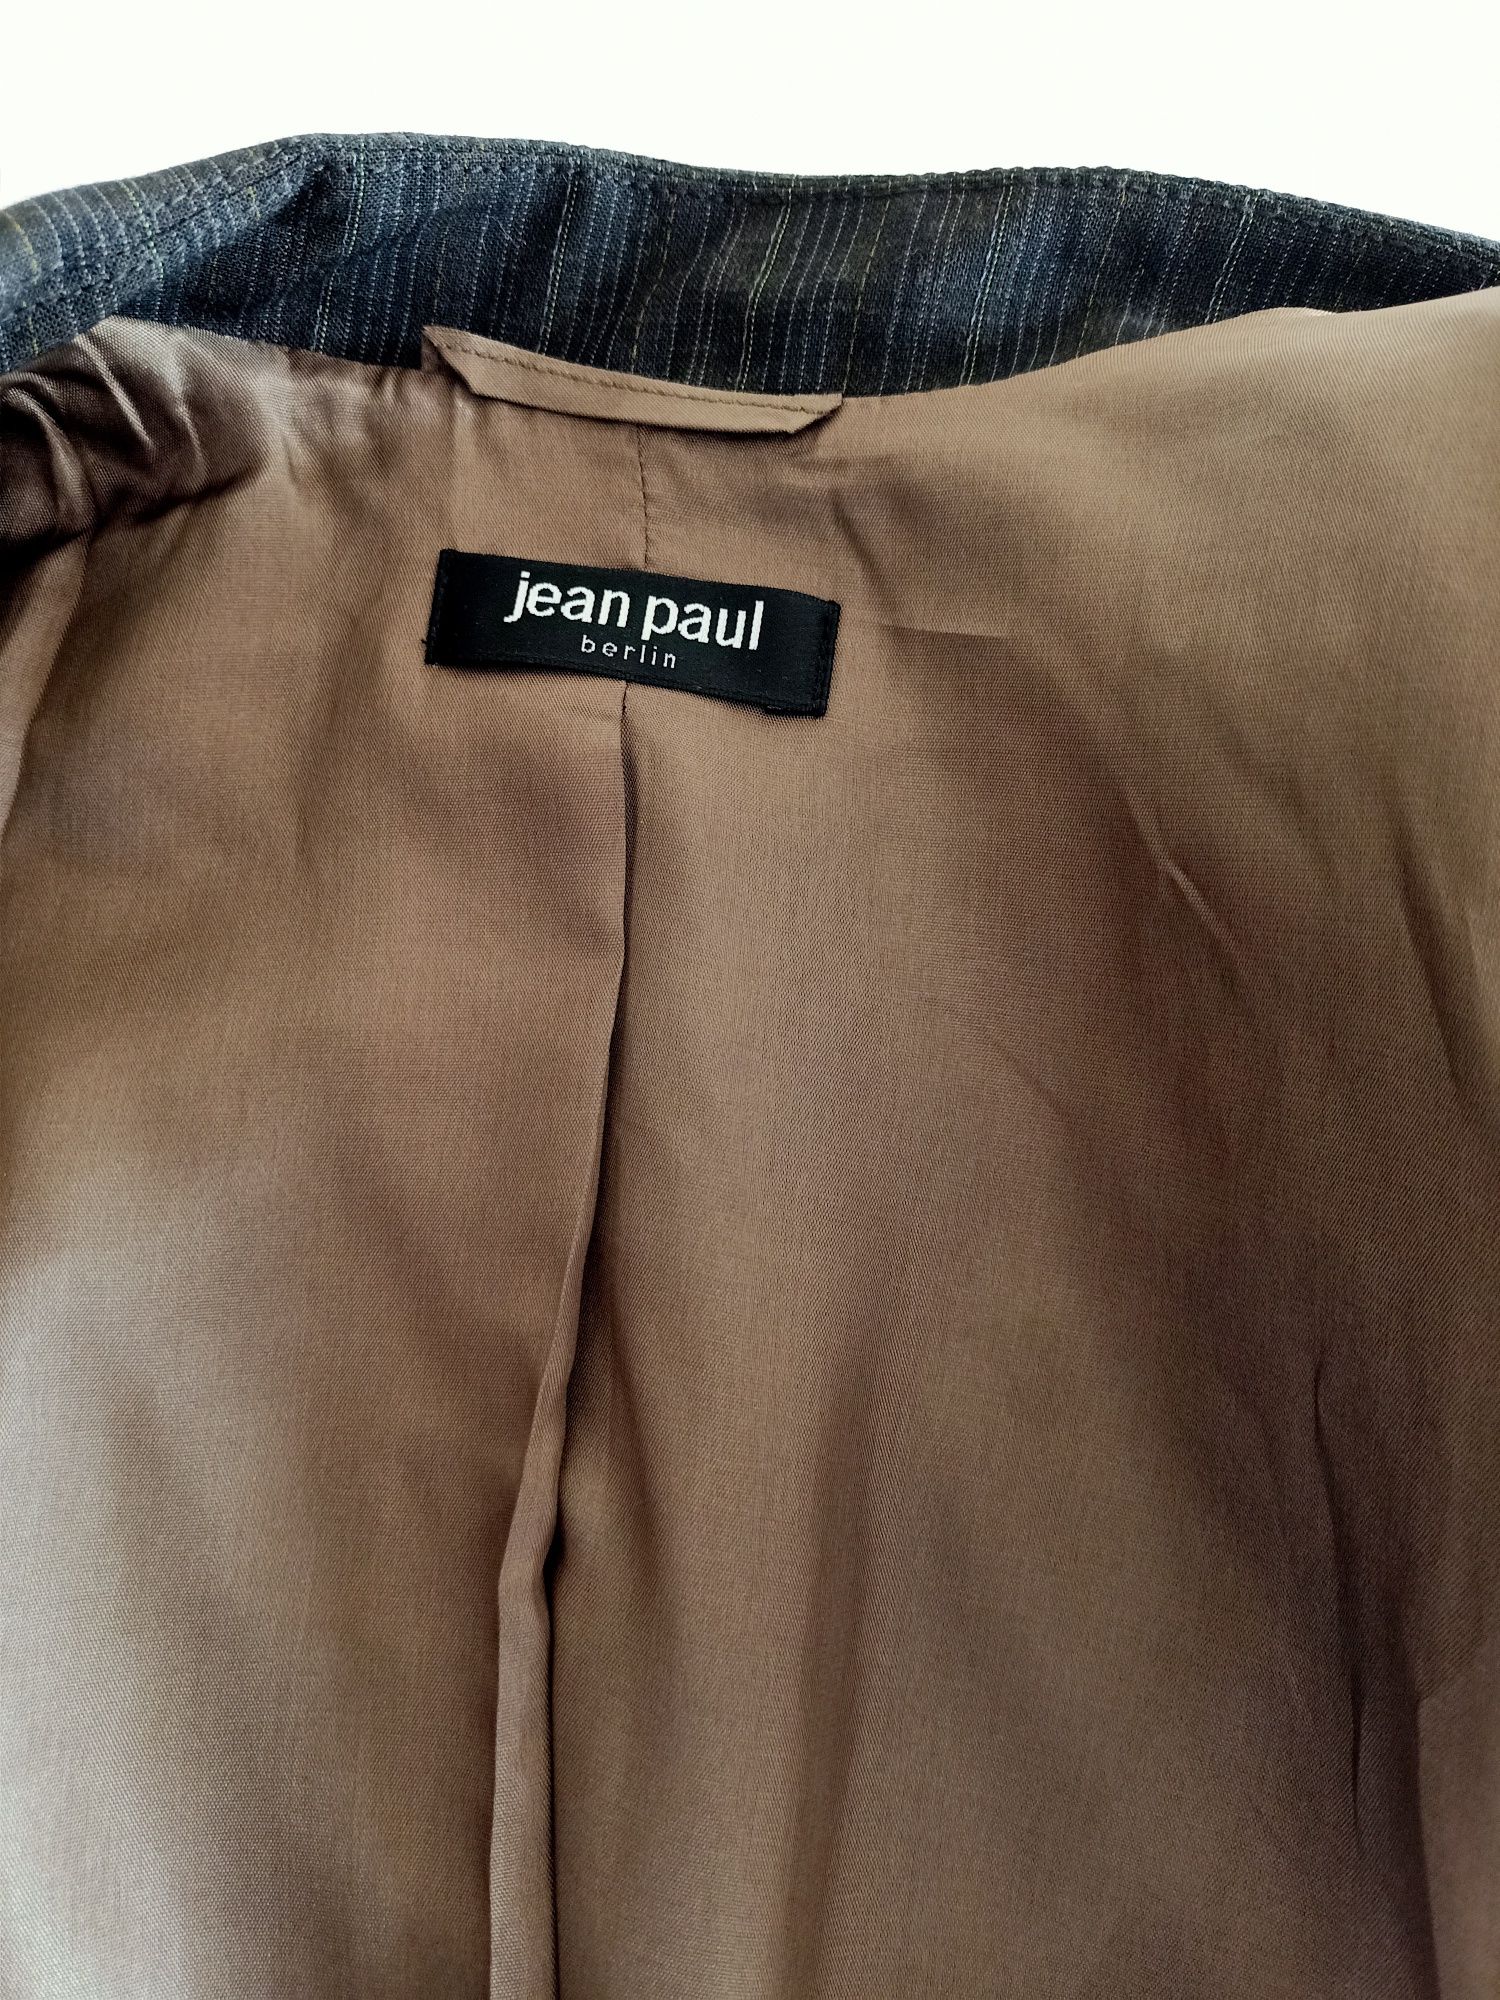 Женская одежда костьюм и брюки  Jean Poul,  производство Берлин, краси